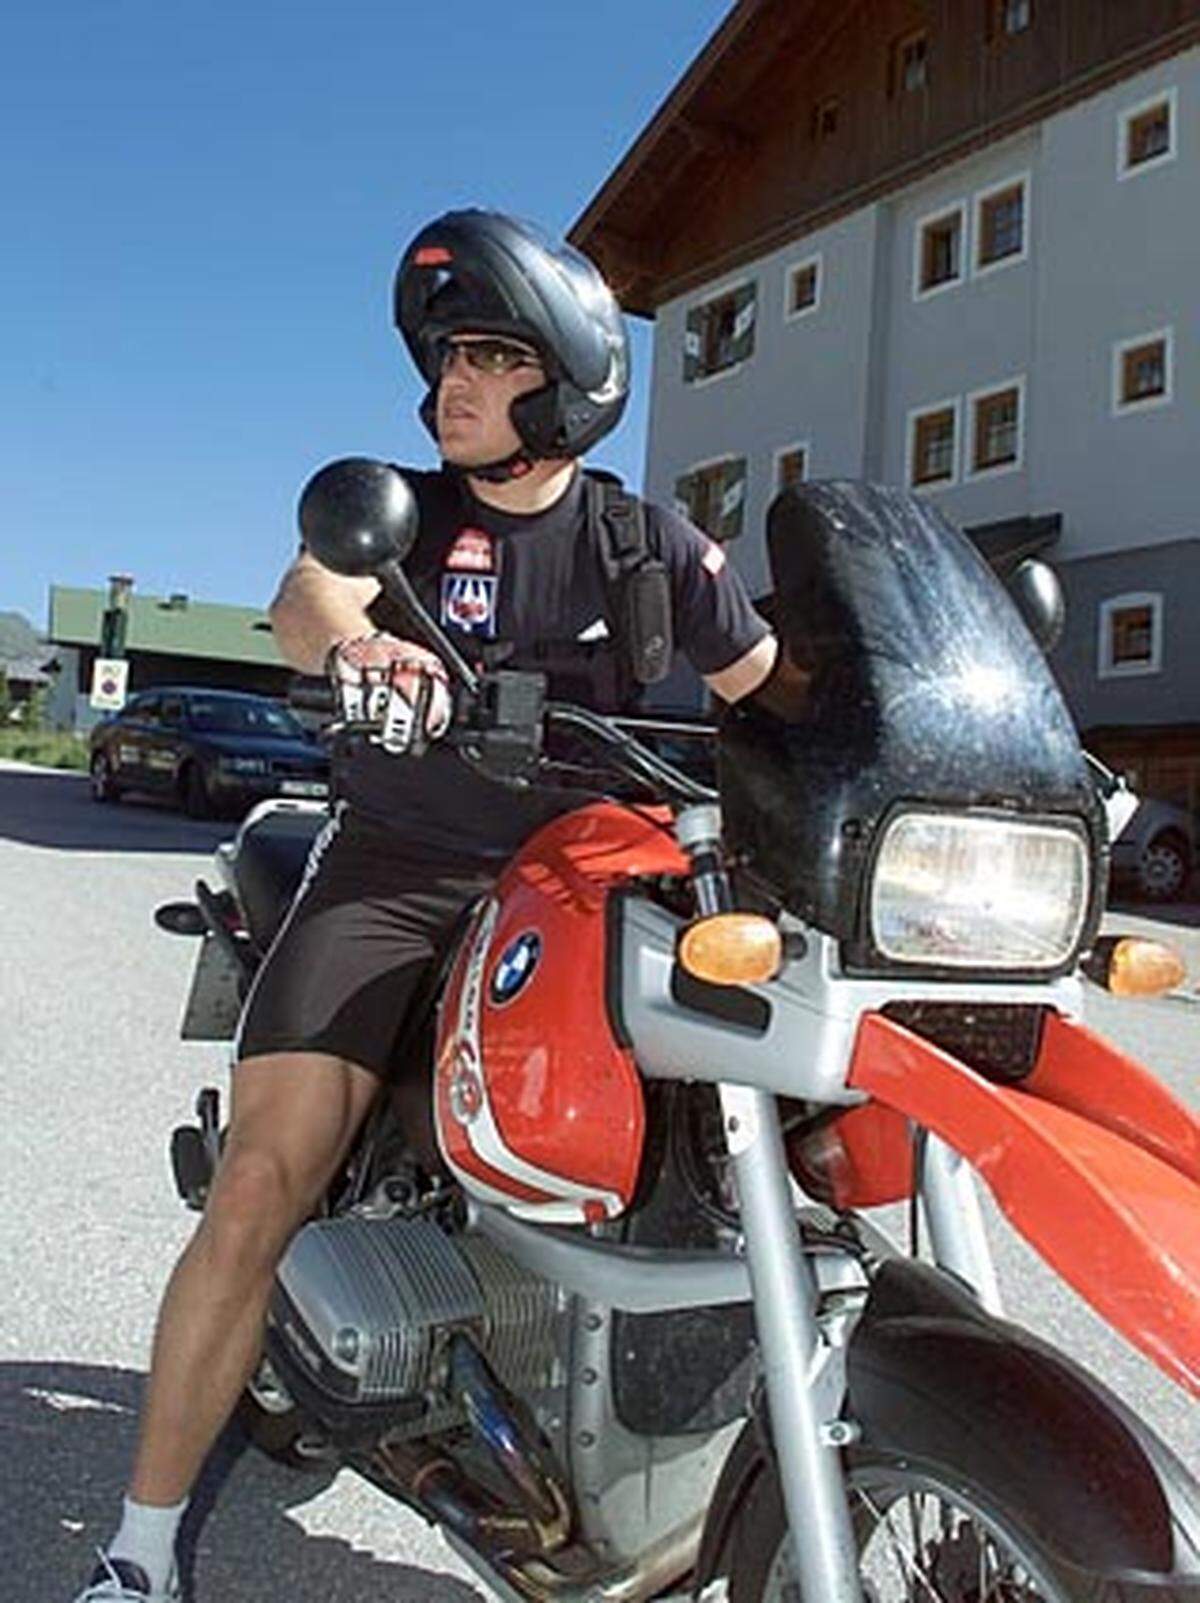 Am 24. August 2001 schlägt das Schicksal zu: Der begeisterte Motorradfahrer Hermann Maier fährt am Abend mit seiner Maschine vom Training nach Hause.